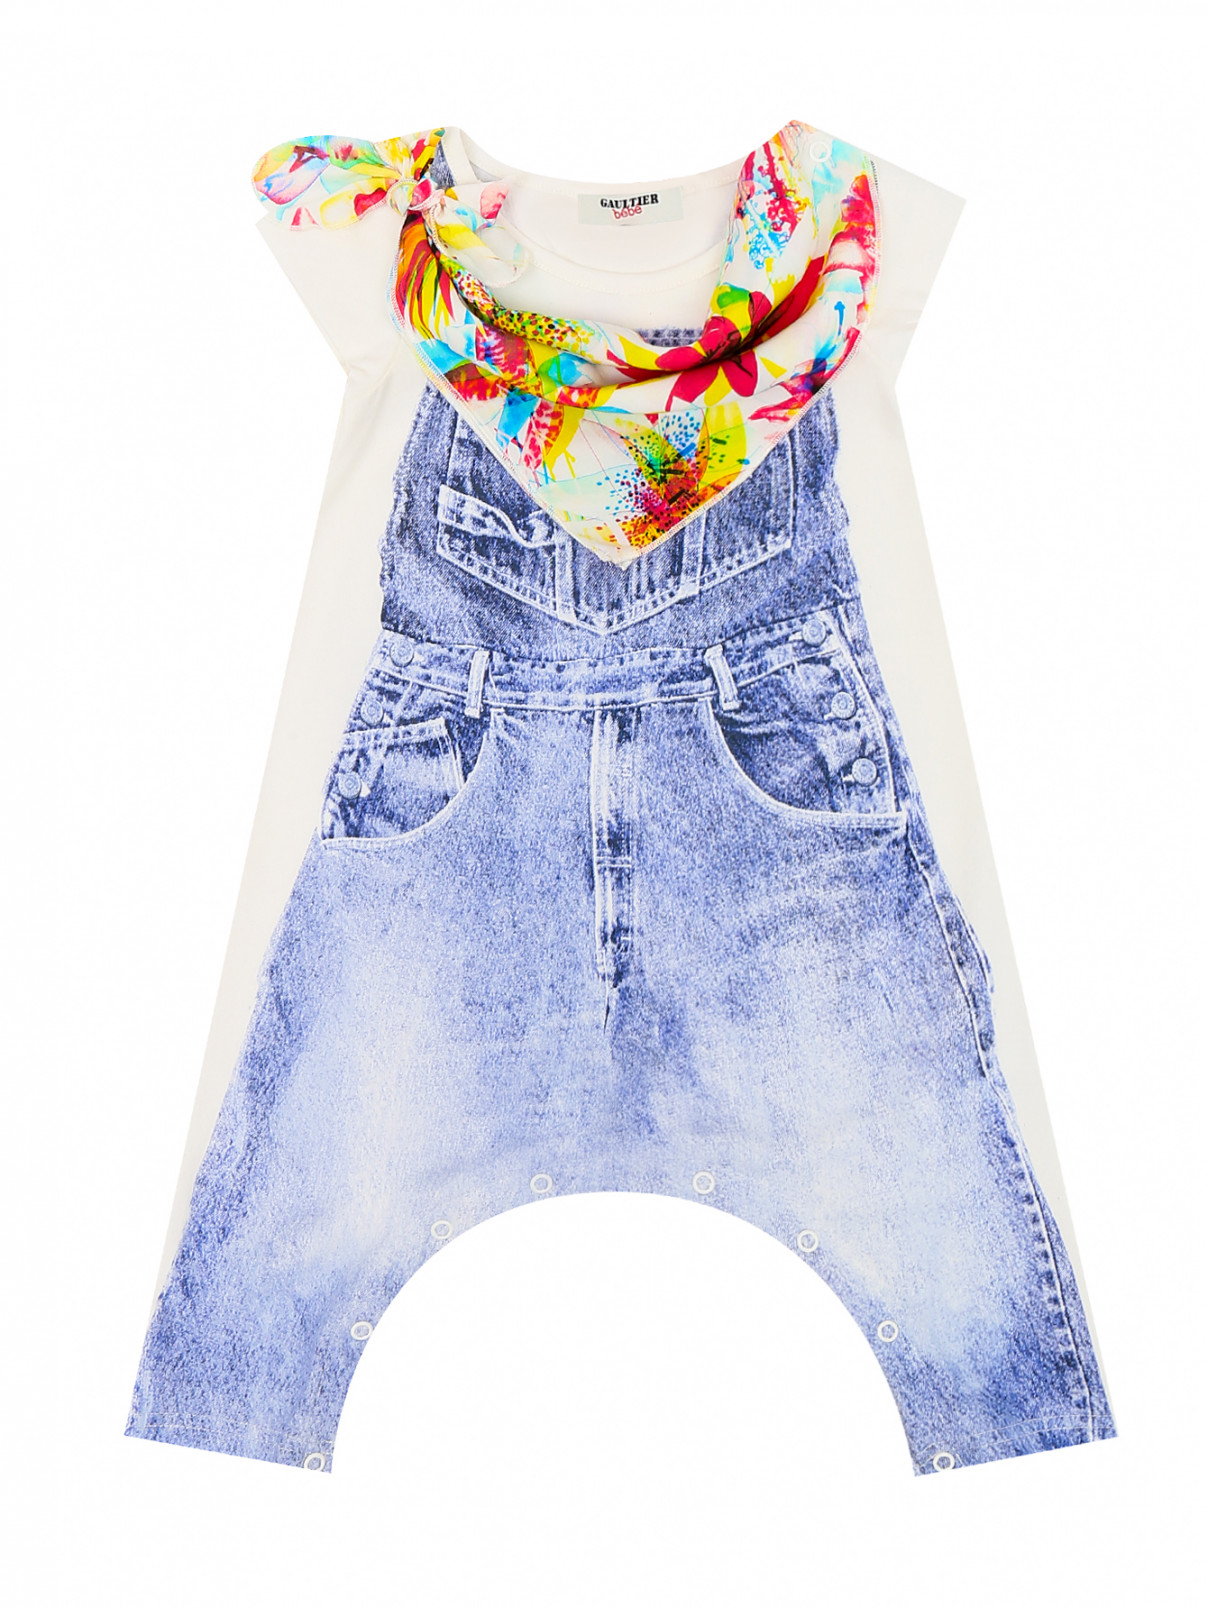 Хлопковые ползунки с яркой деталью Junior Gaultier  –  Общий вид  – Цвет:  Синий